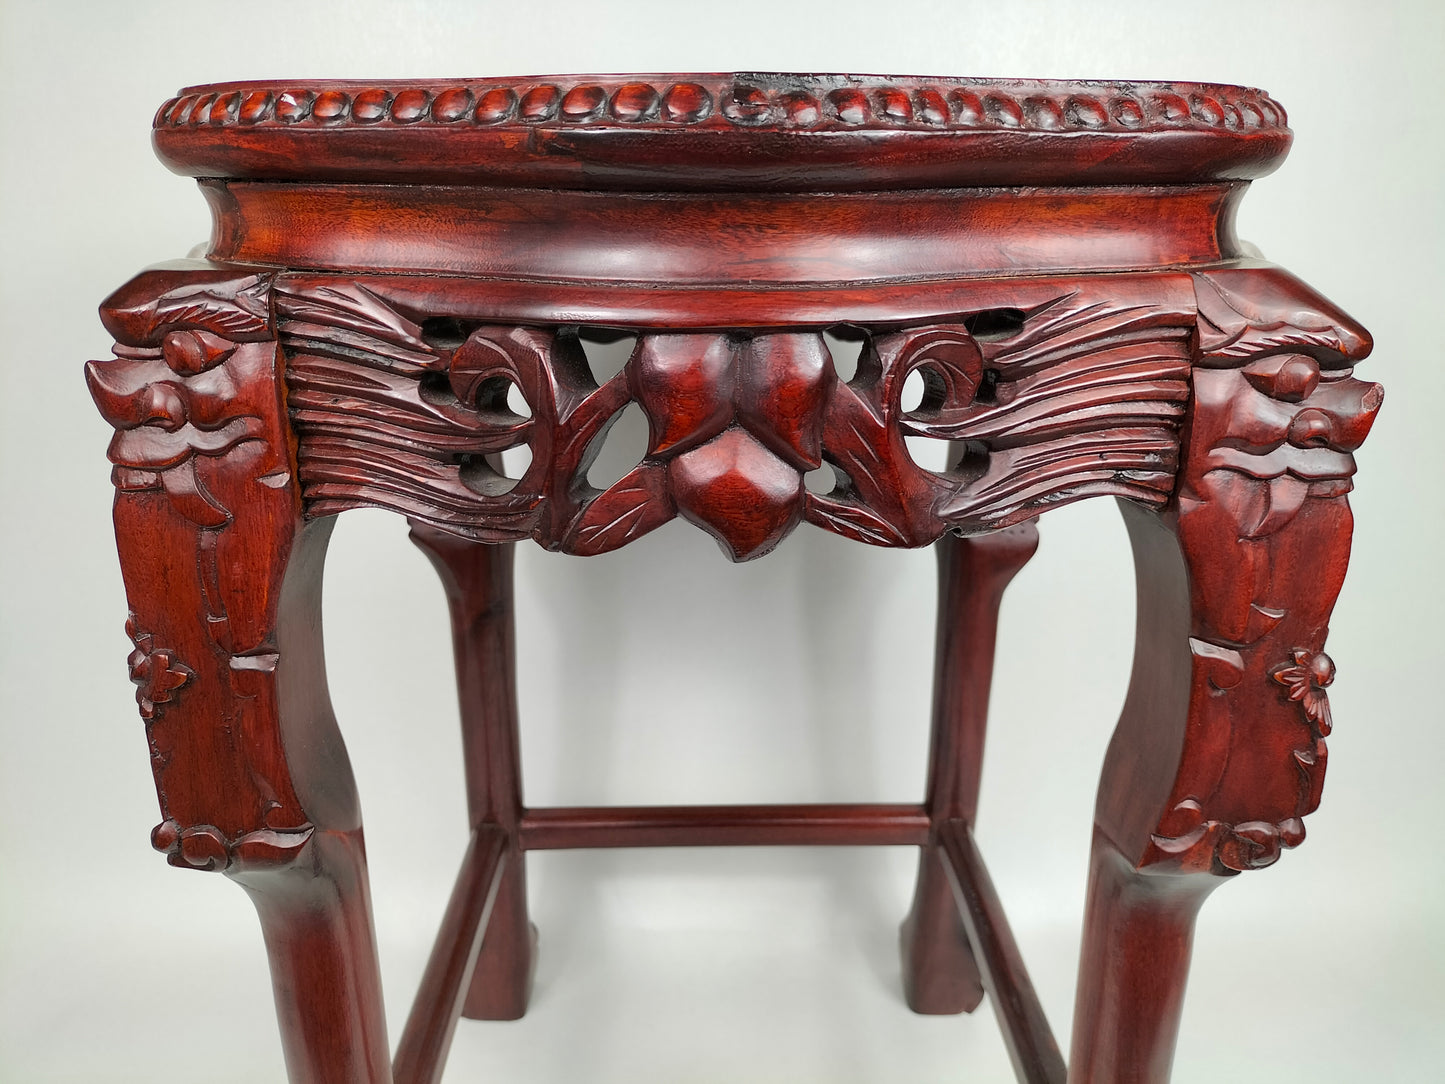 Bàn phụ bằng gỗ Trung Quốc được khảm mặt đá cẩm thạch // Gỗ hồng sắc - thế kỷ 20